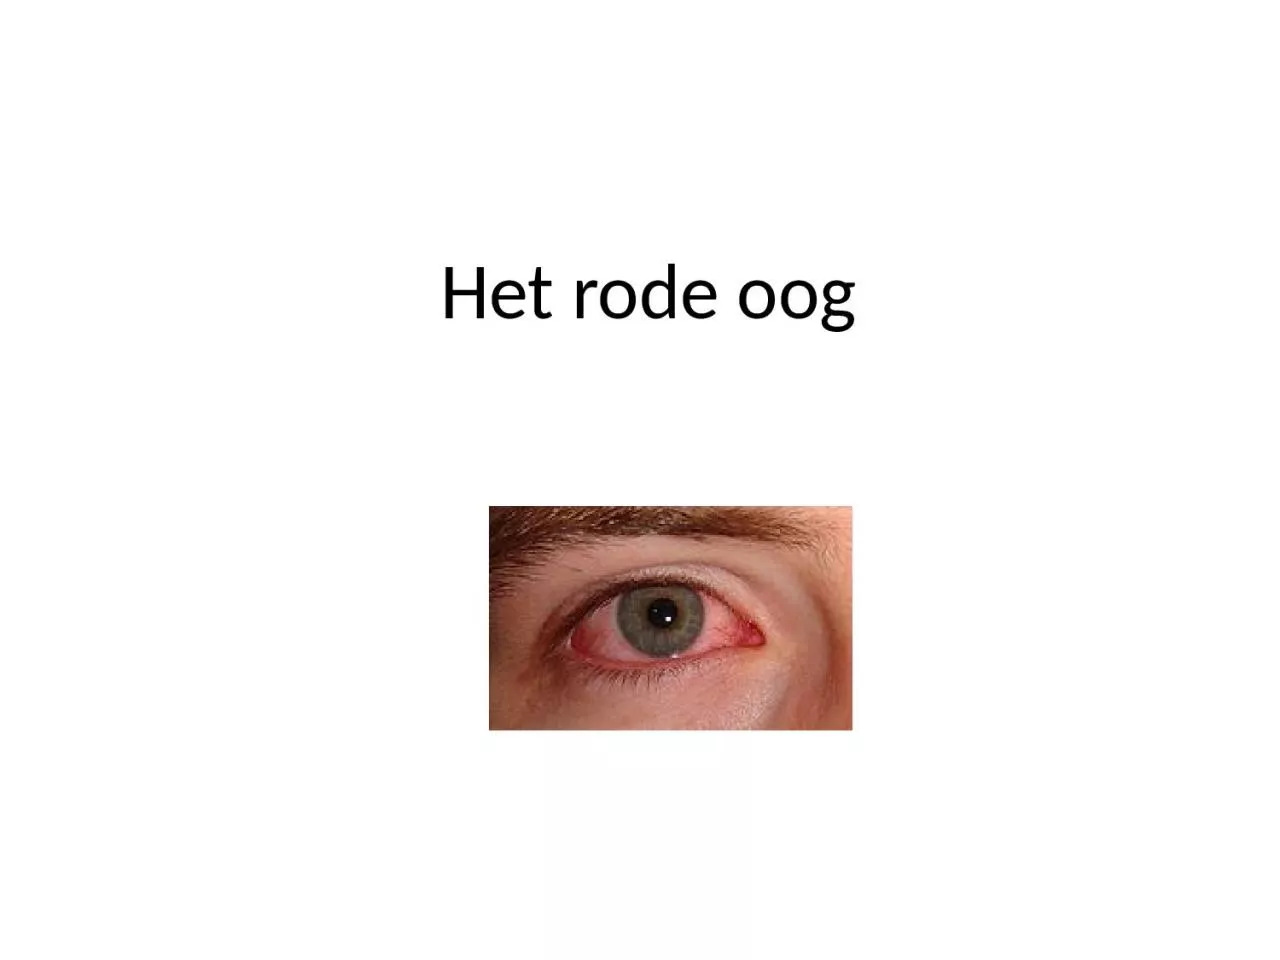 Het rode oog Sclera = buitenste omhulsel oogbol (harde oogrok)